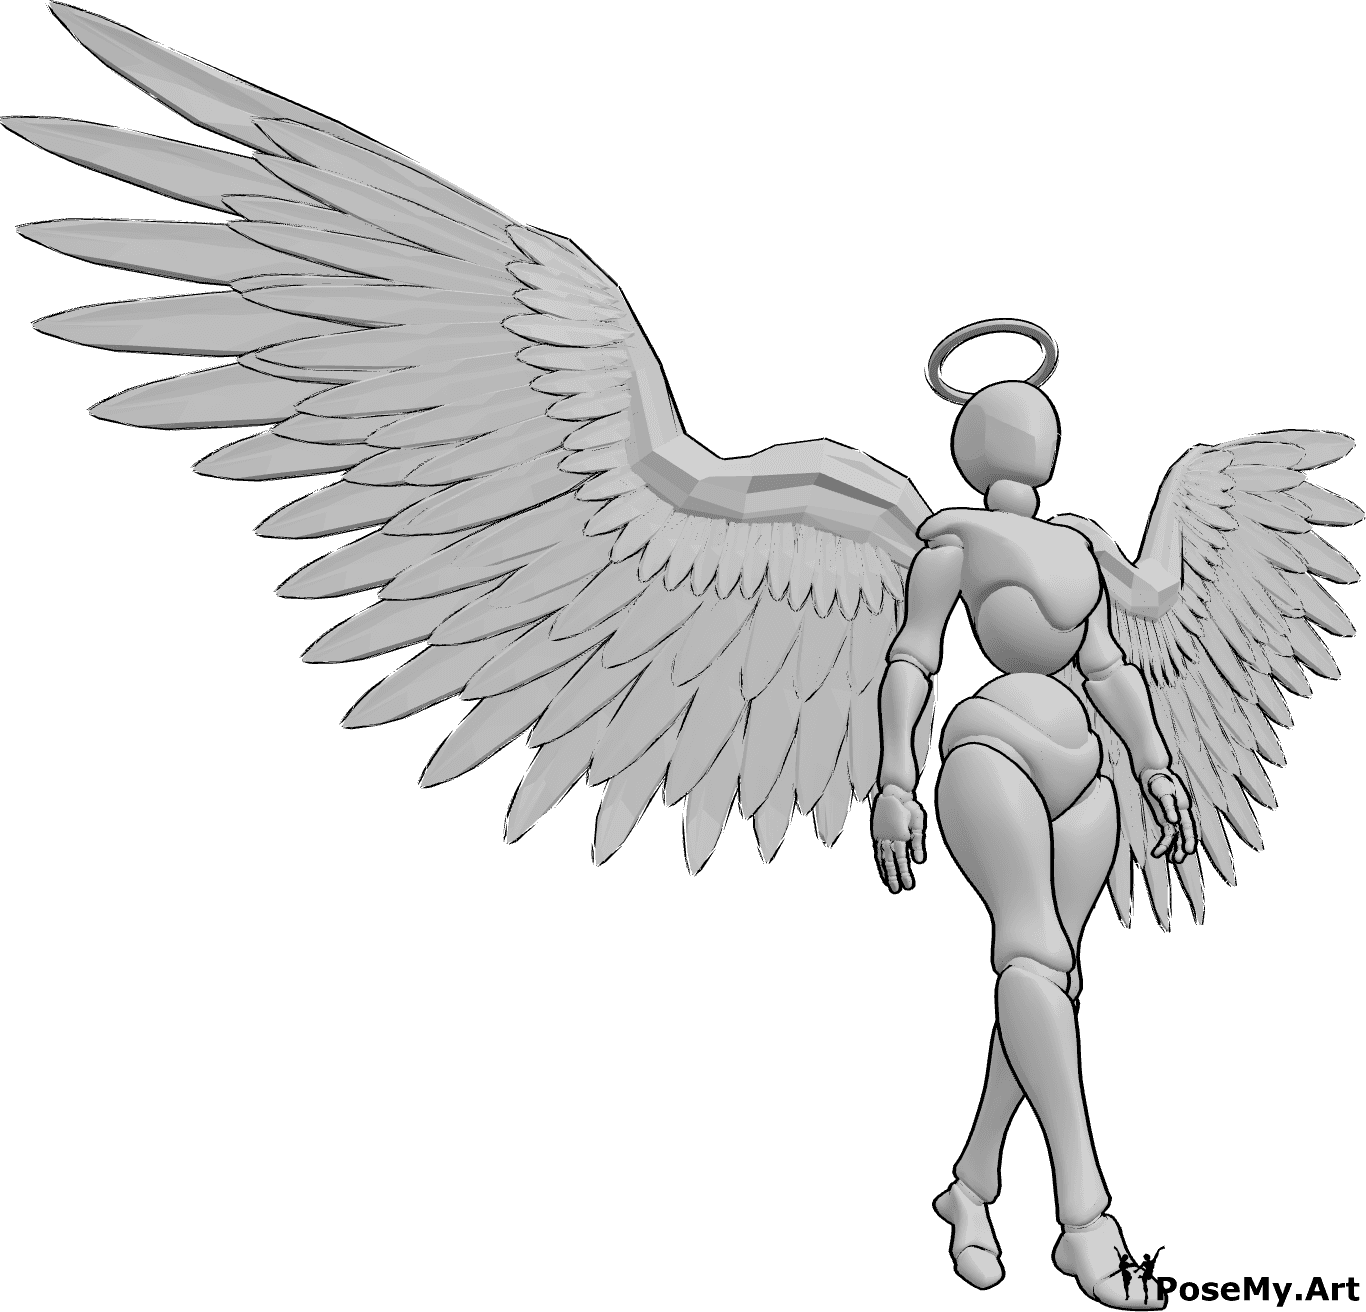 Riferimento alle pose- Angelo femminile che cammina - L'angelo femmina cammina lentamente con le ali aperte e guarda in avanti